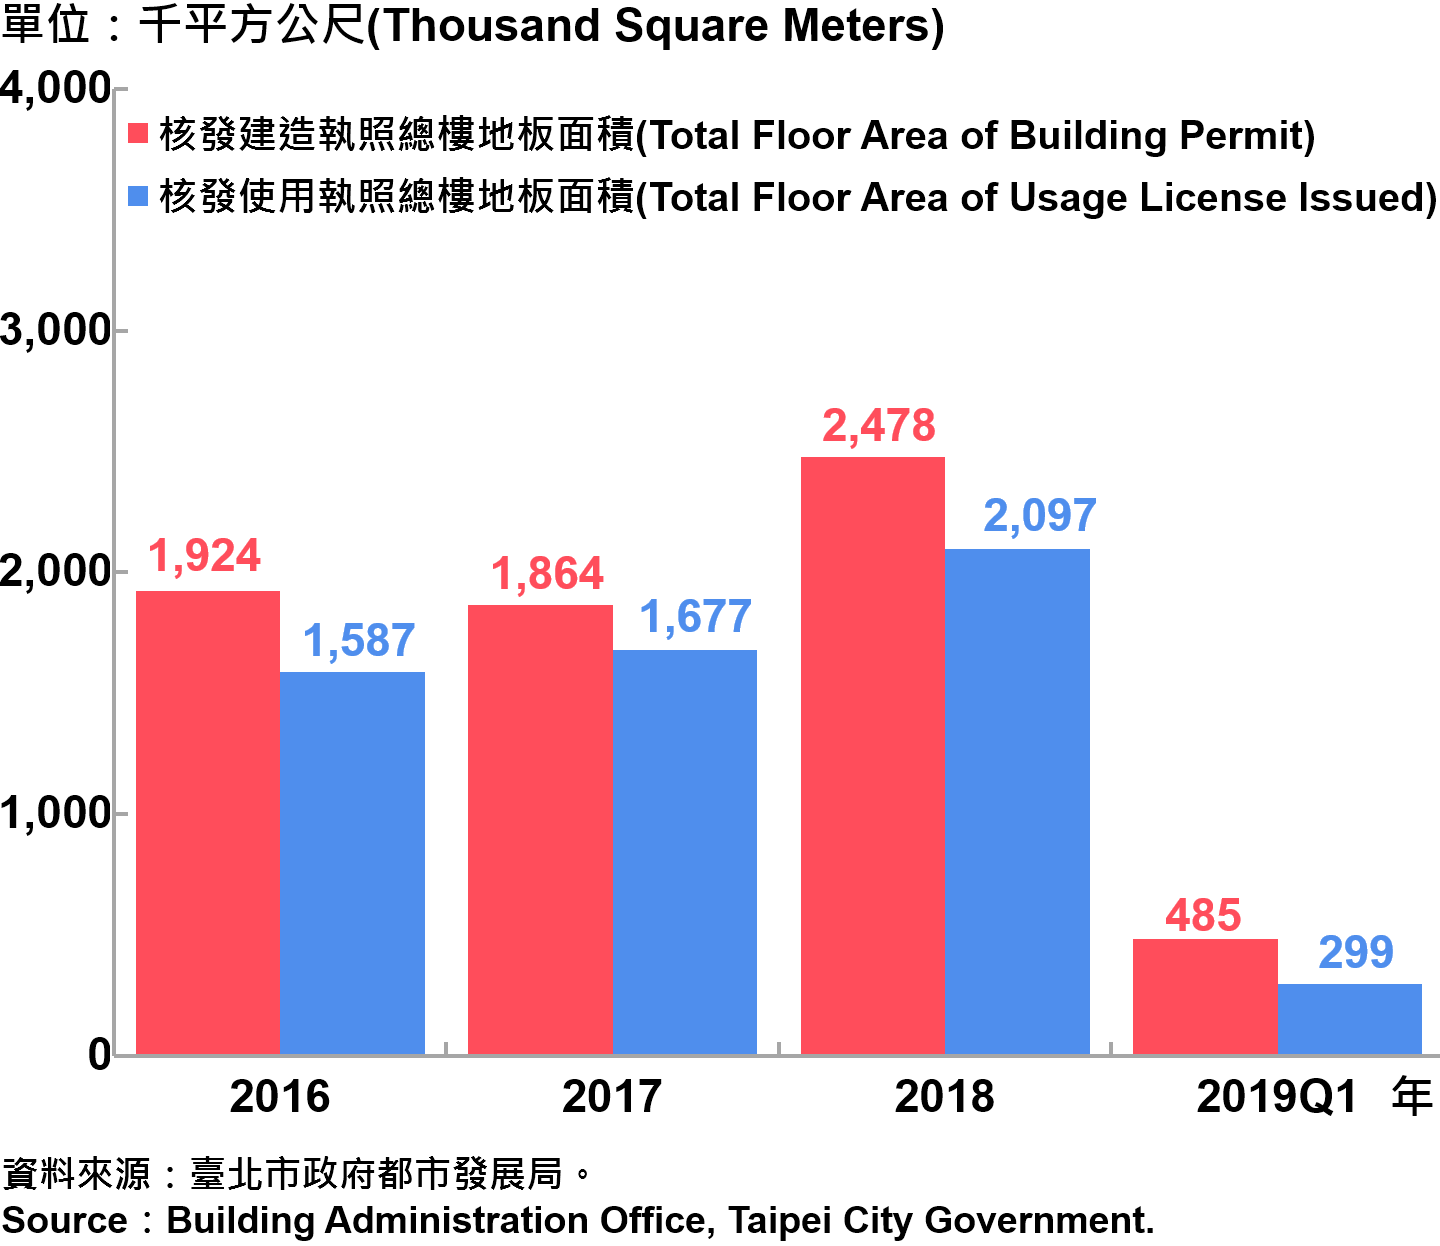 臺北市核發建築物執照與使用執照總樓地板面積—2019Q1 Total Floor Area of Building Permit and Usage License Issued in Taipei City—2019Q1